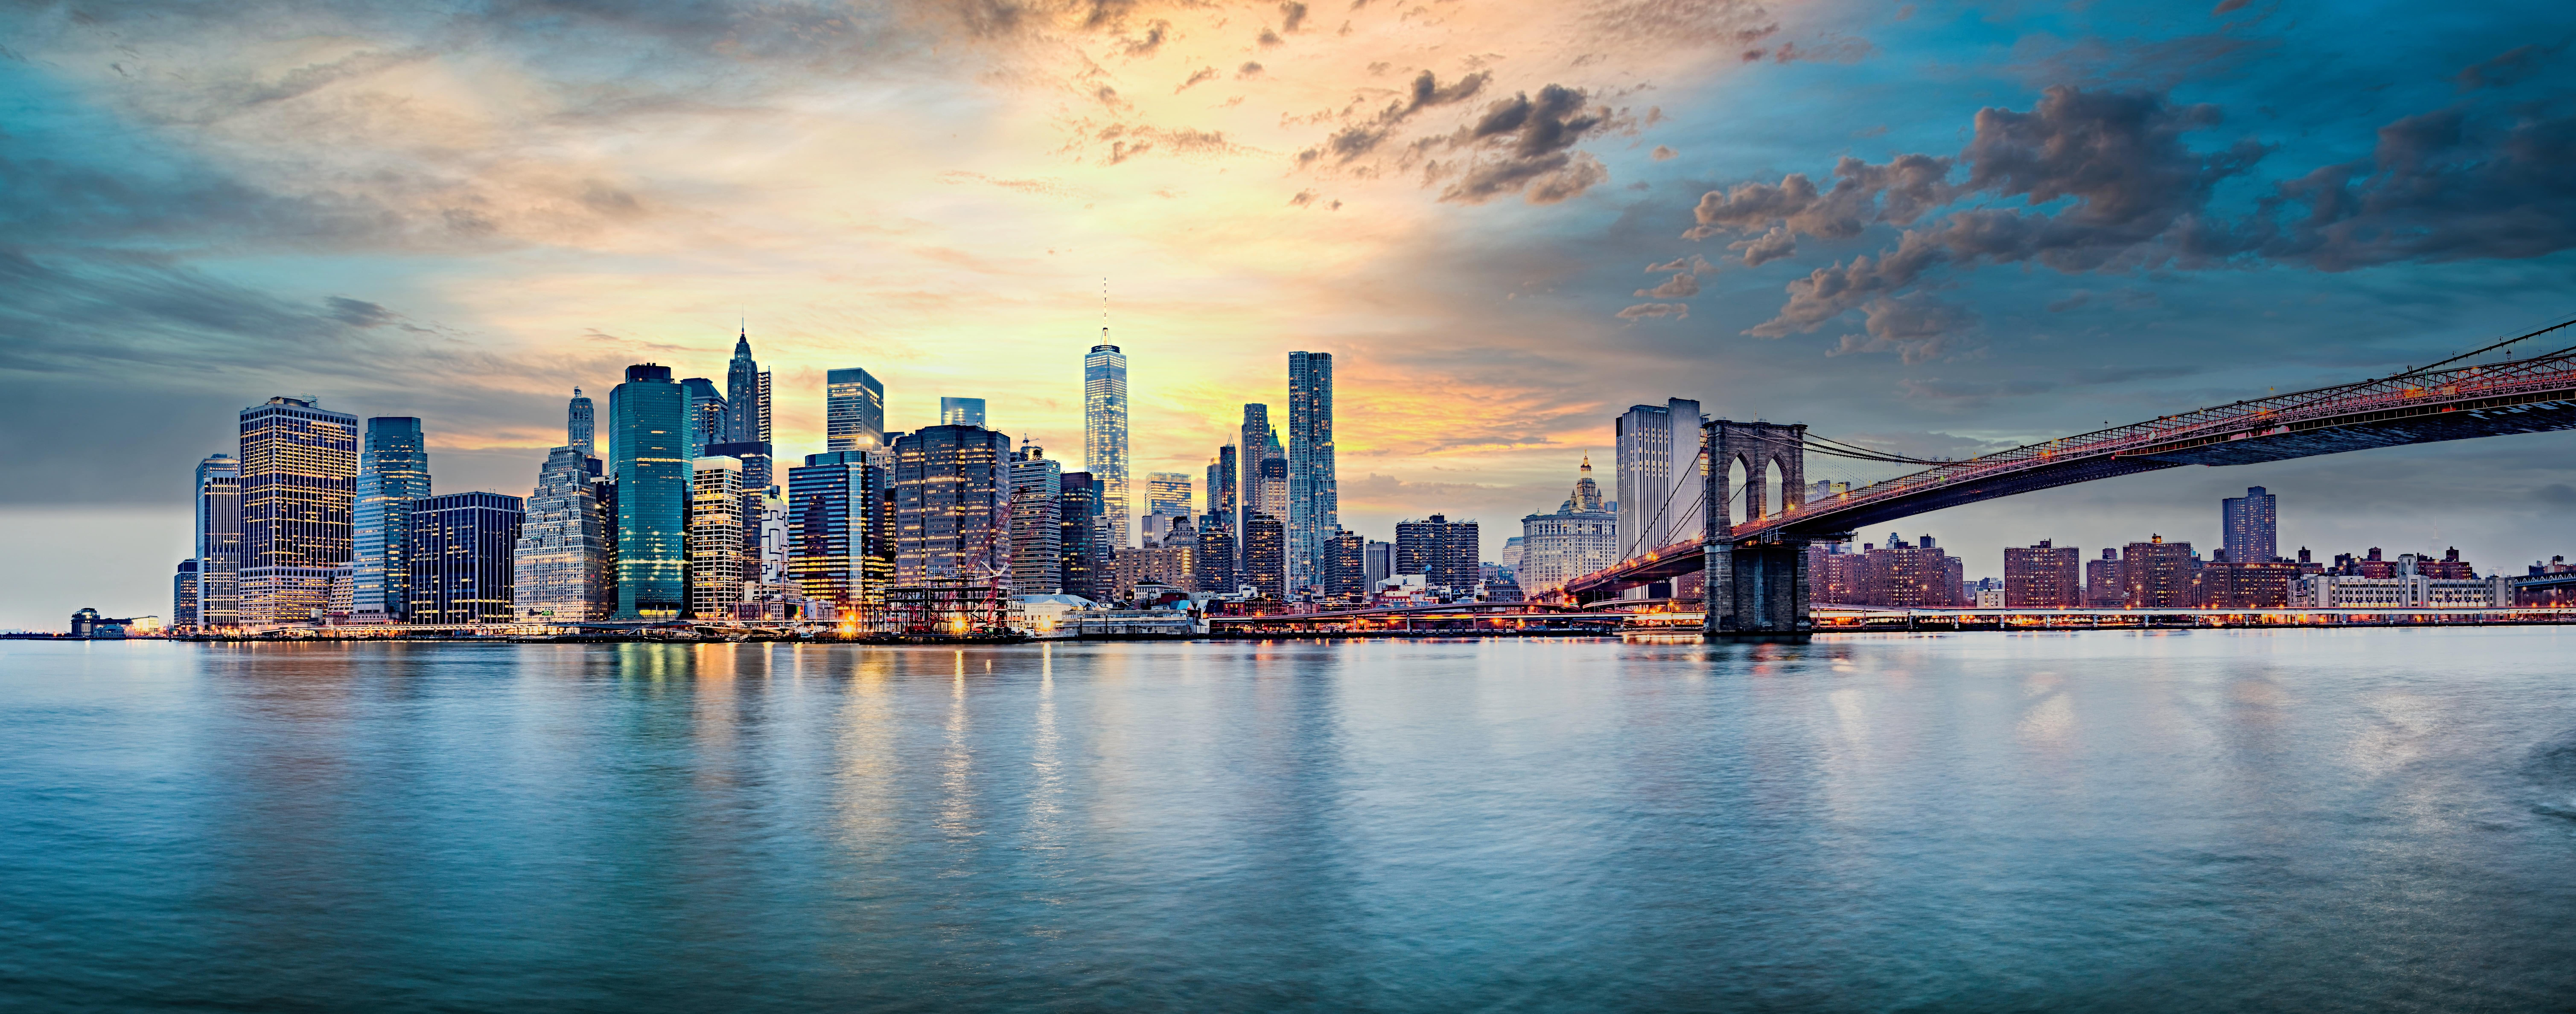 New York est en train de reconstruire la côte est de Manhattan pour faire face à la montée des eaux. © Studio13lights, Adobe Stock